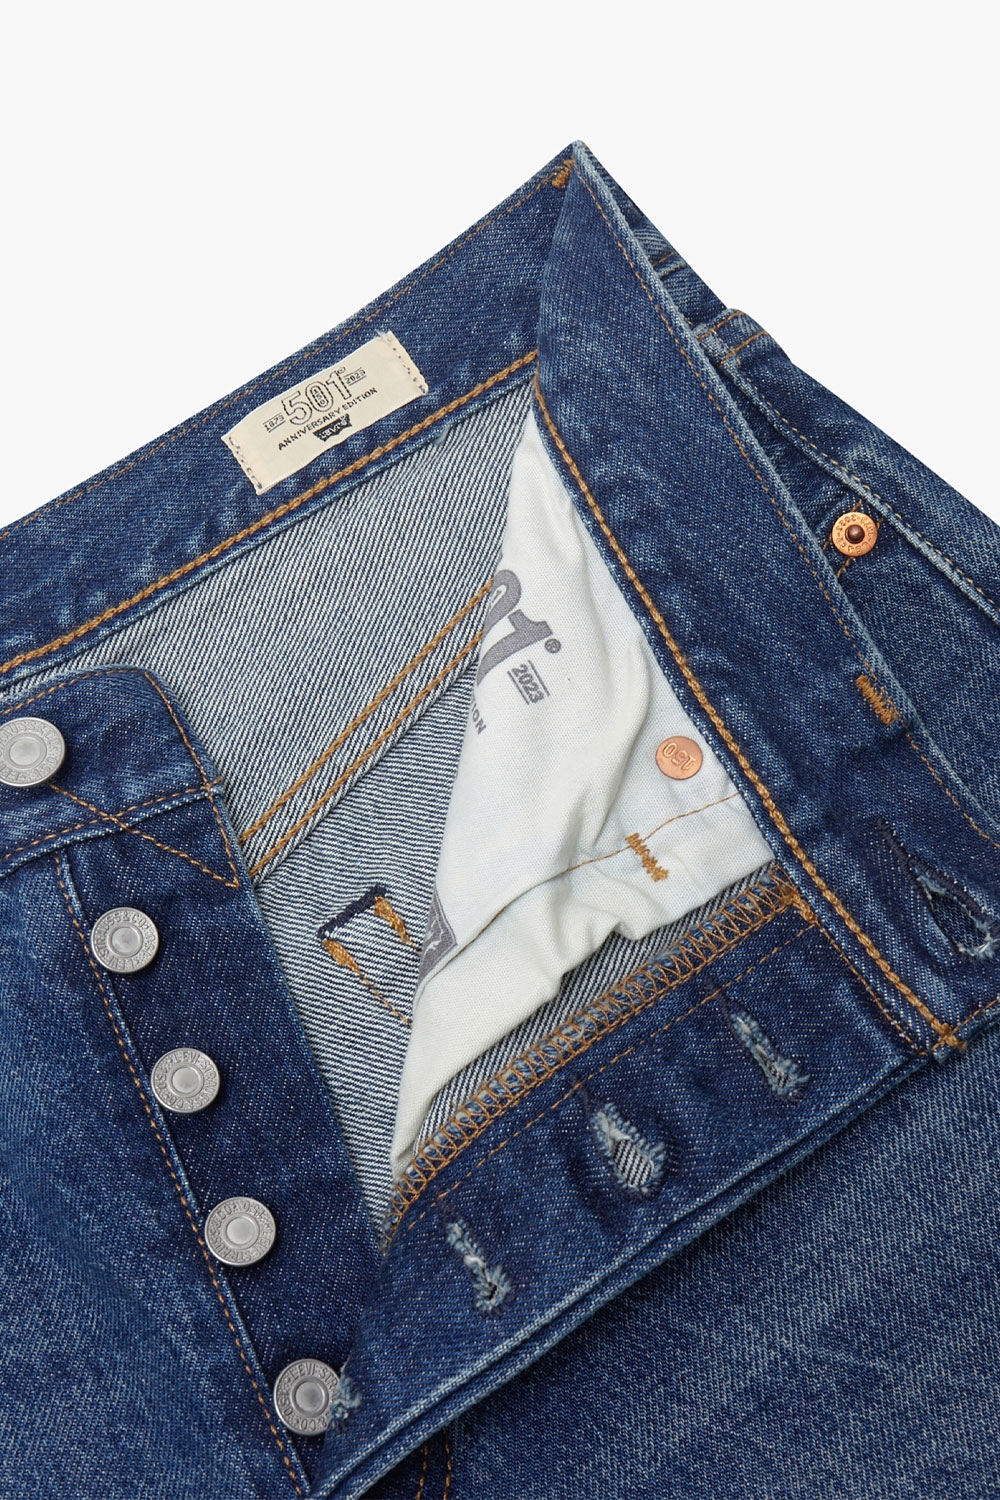 jeans levis 501 original blue denim